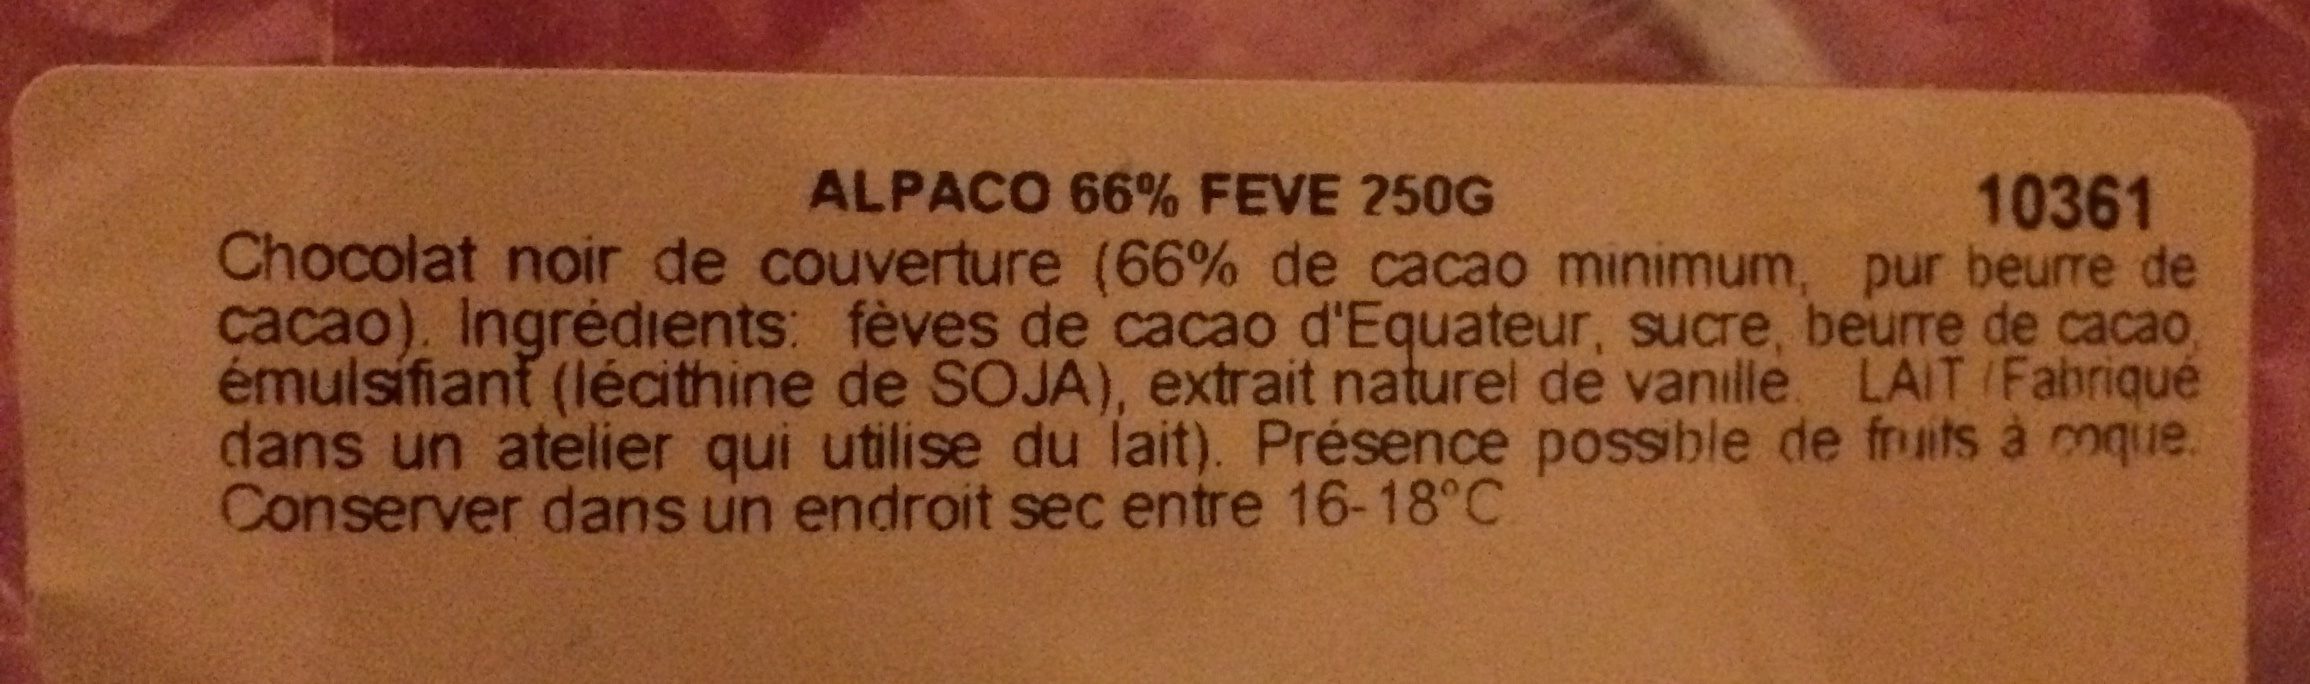 Alpaco - Ingredients - fr